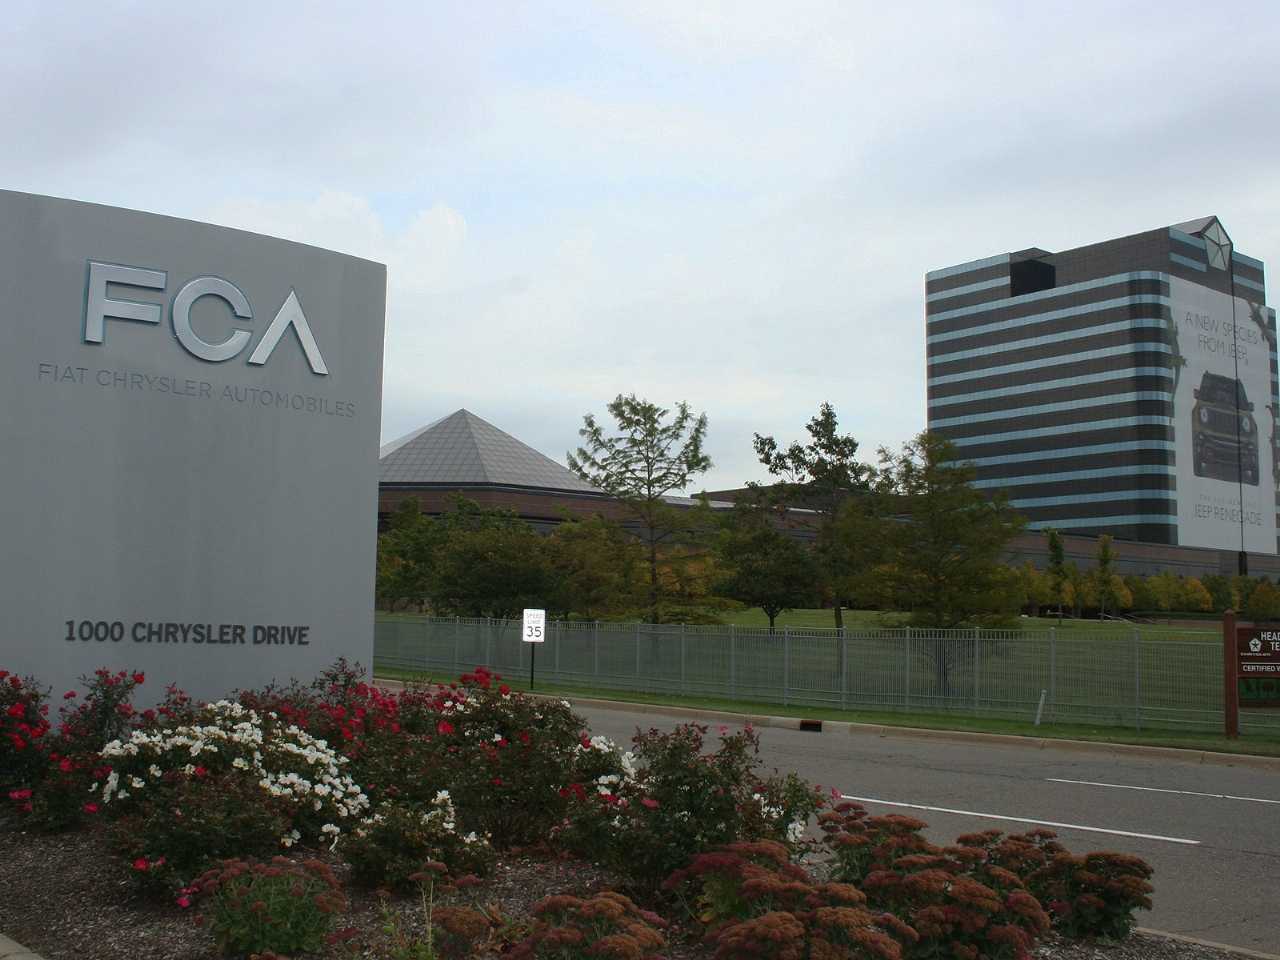 Acima a fachada do Chrysler World Headquarters and Technology Center, complexo que faz parte da FCA